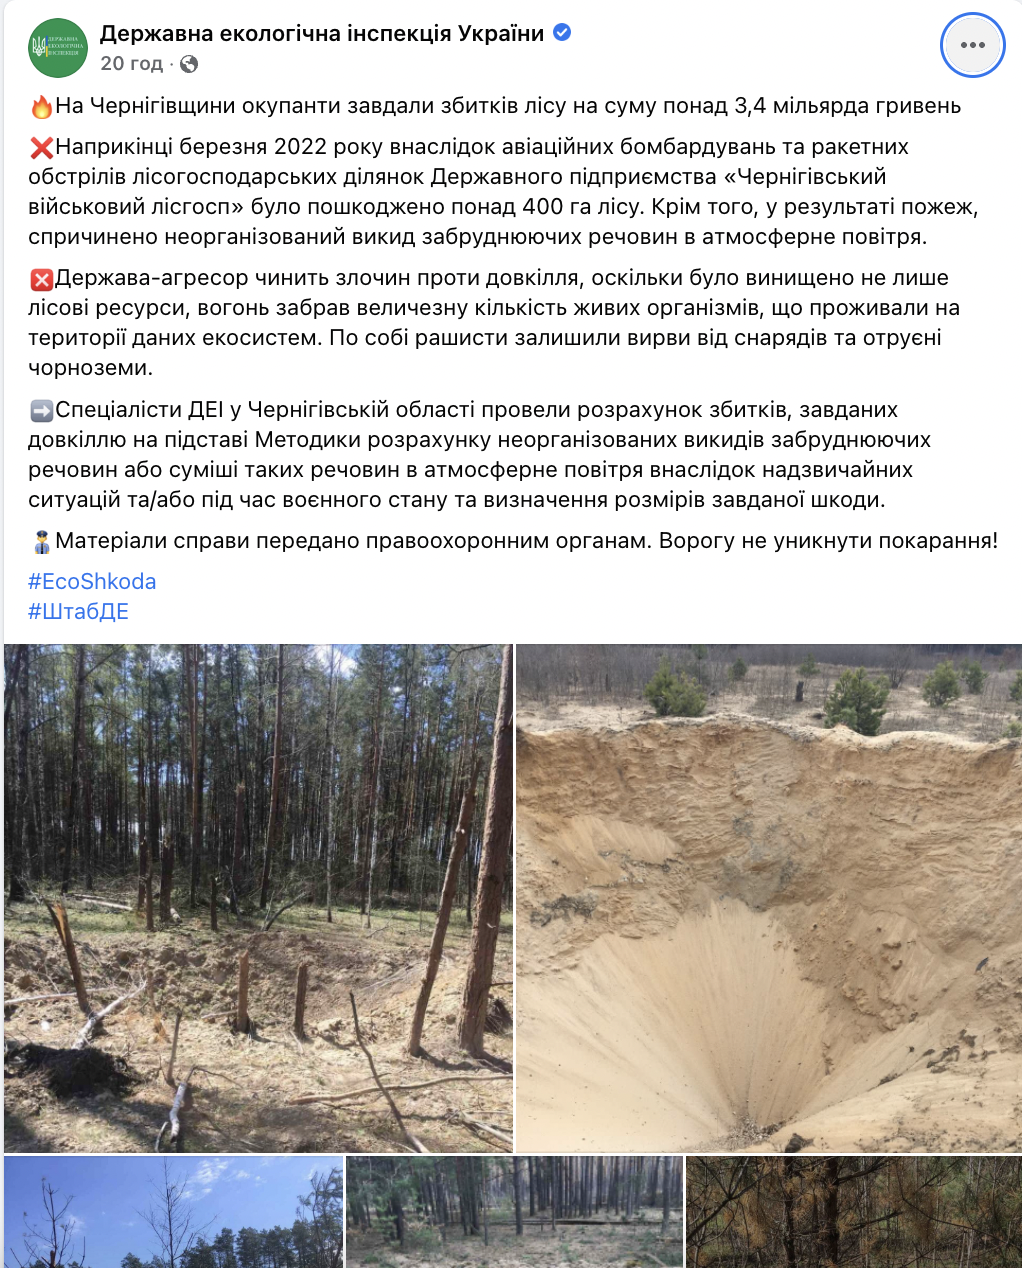 На Чернігівщини збитки для лісу від бомбардувань склали 3,4 мільярда грн. Фото